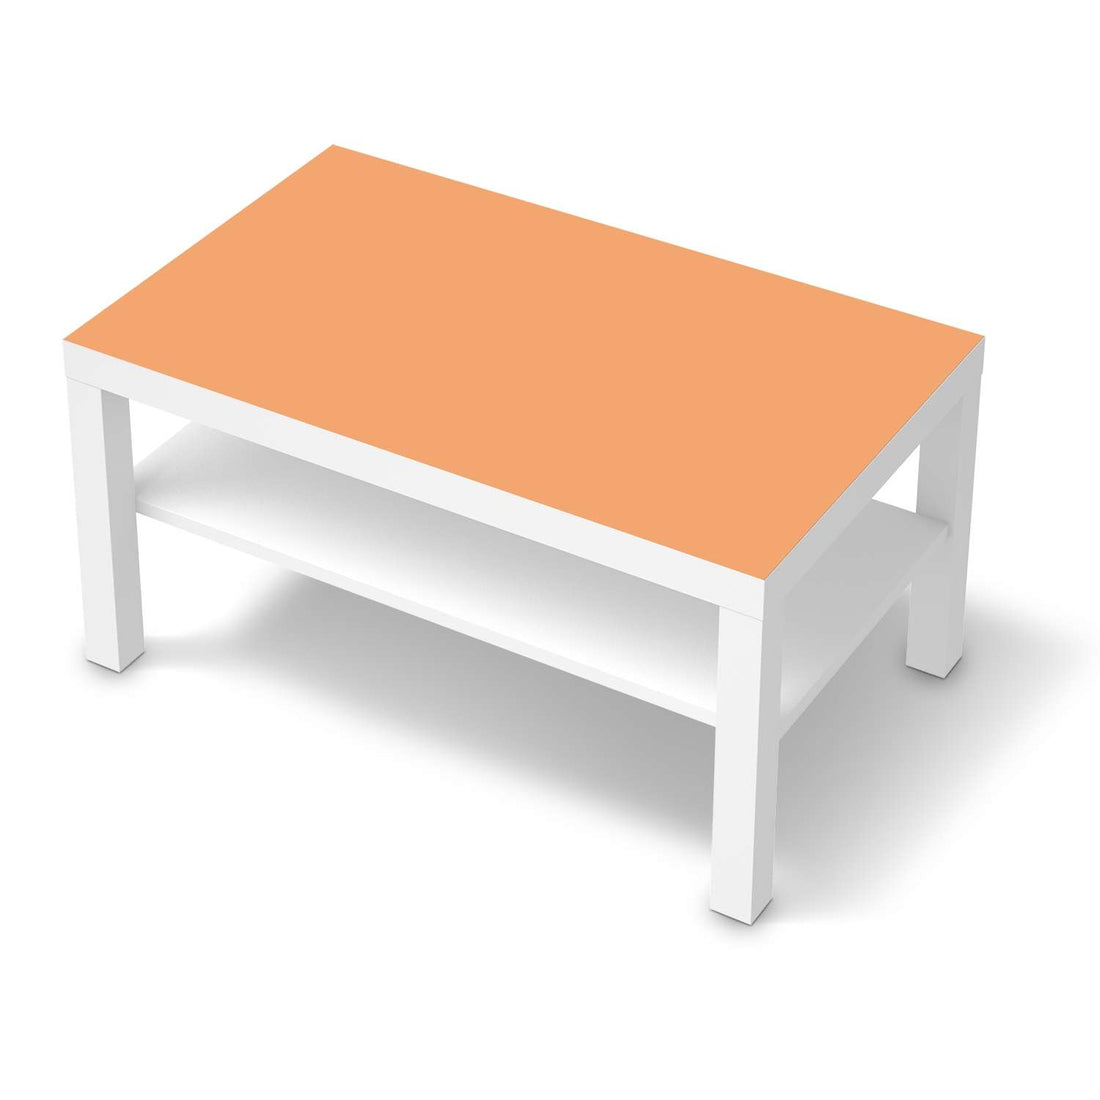 Möbelfolie Orange Light - IKEA Lack Tisch 90x55 cm - weiss